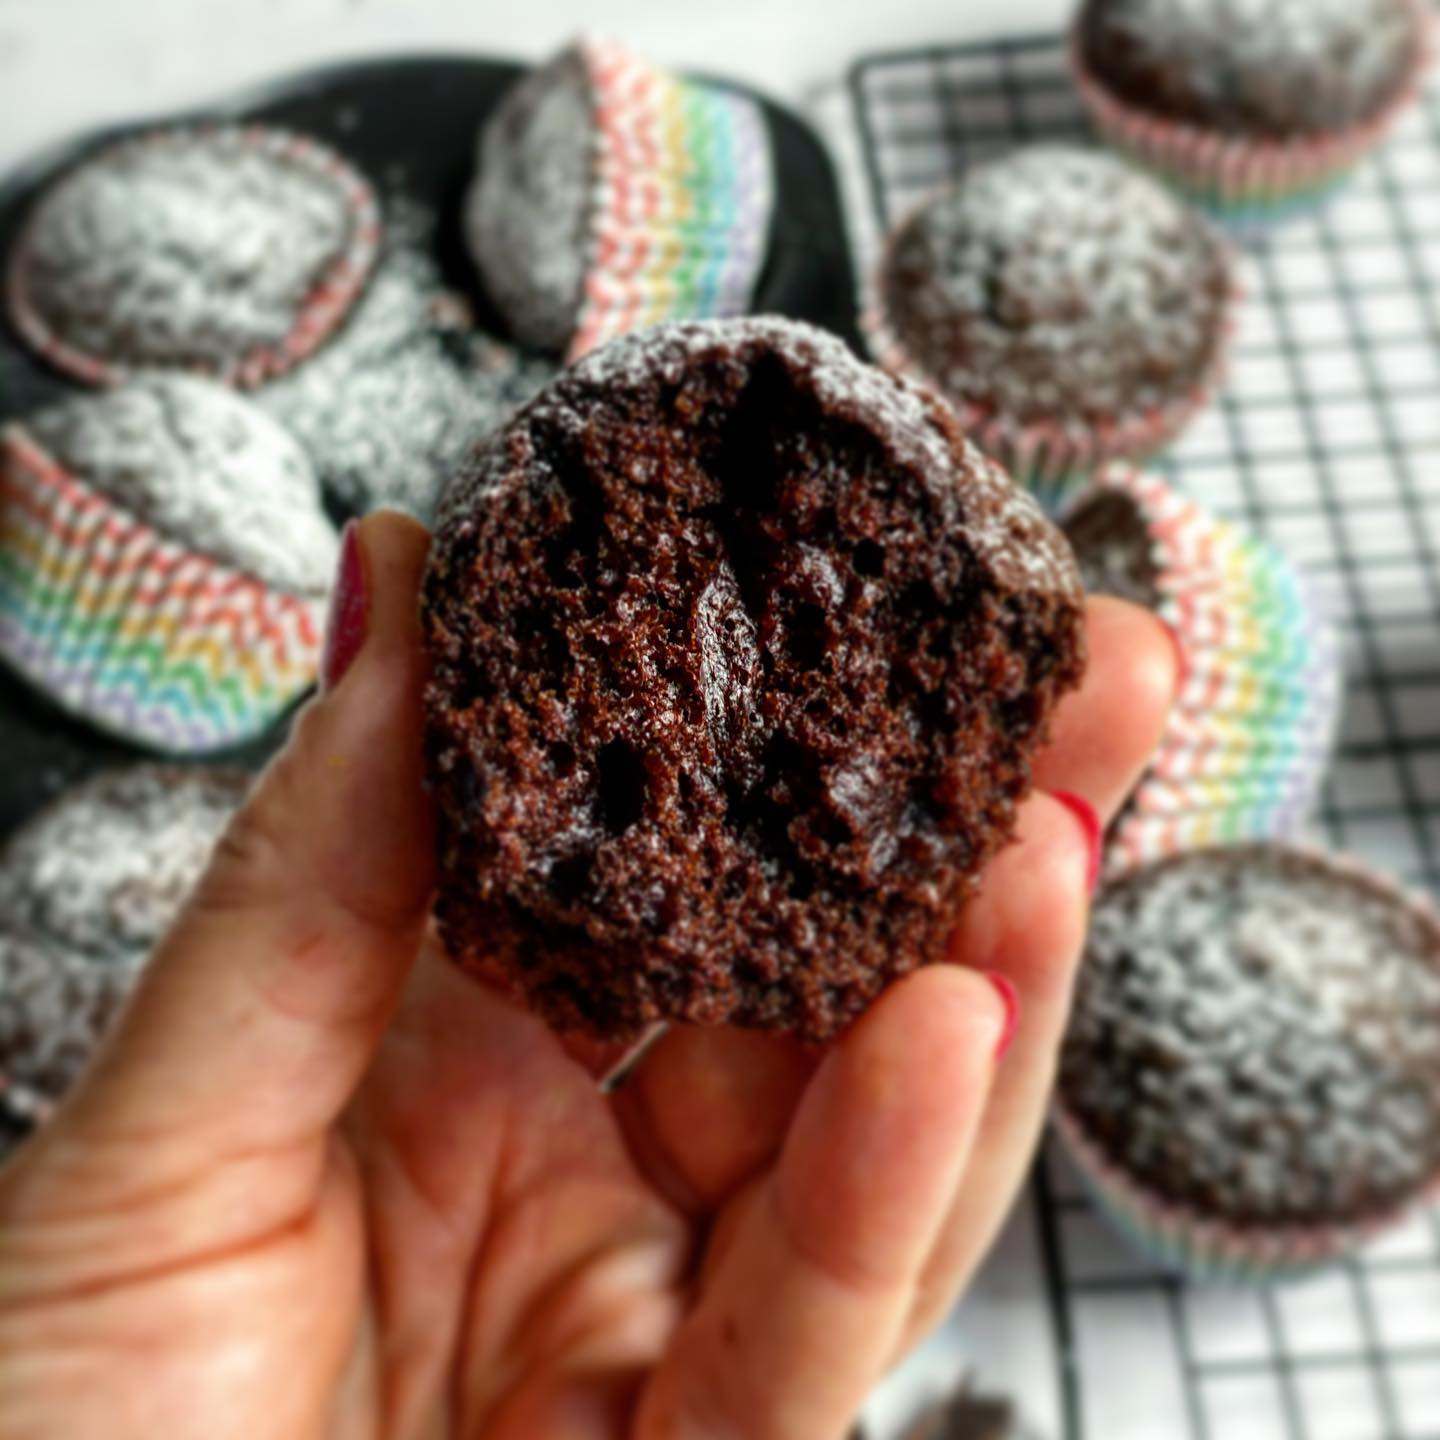 Obłędnie czekoladowe muffiny. Poznaj sekretny składnik